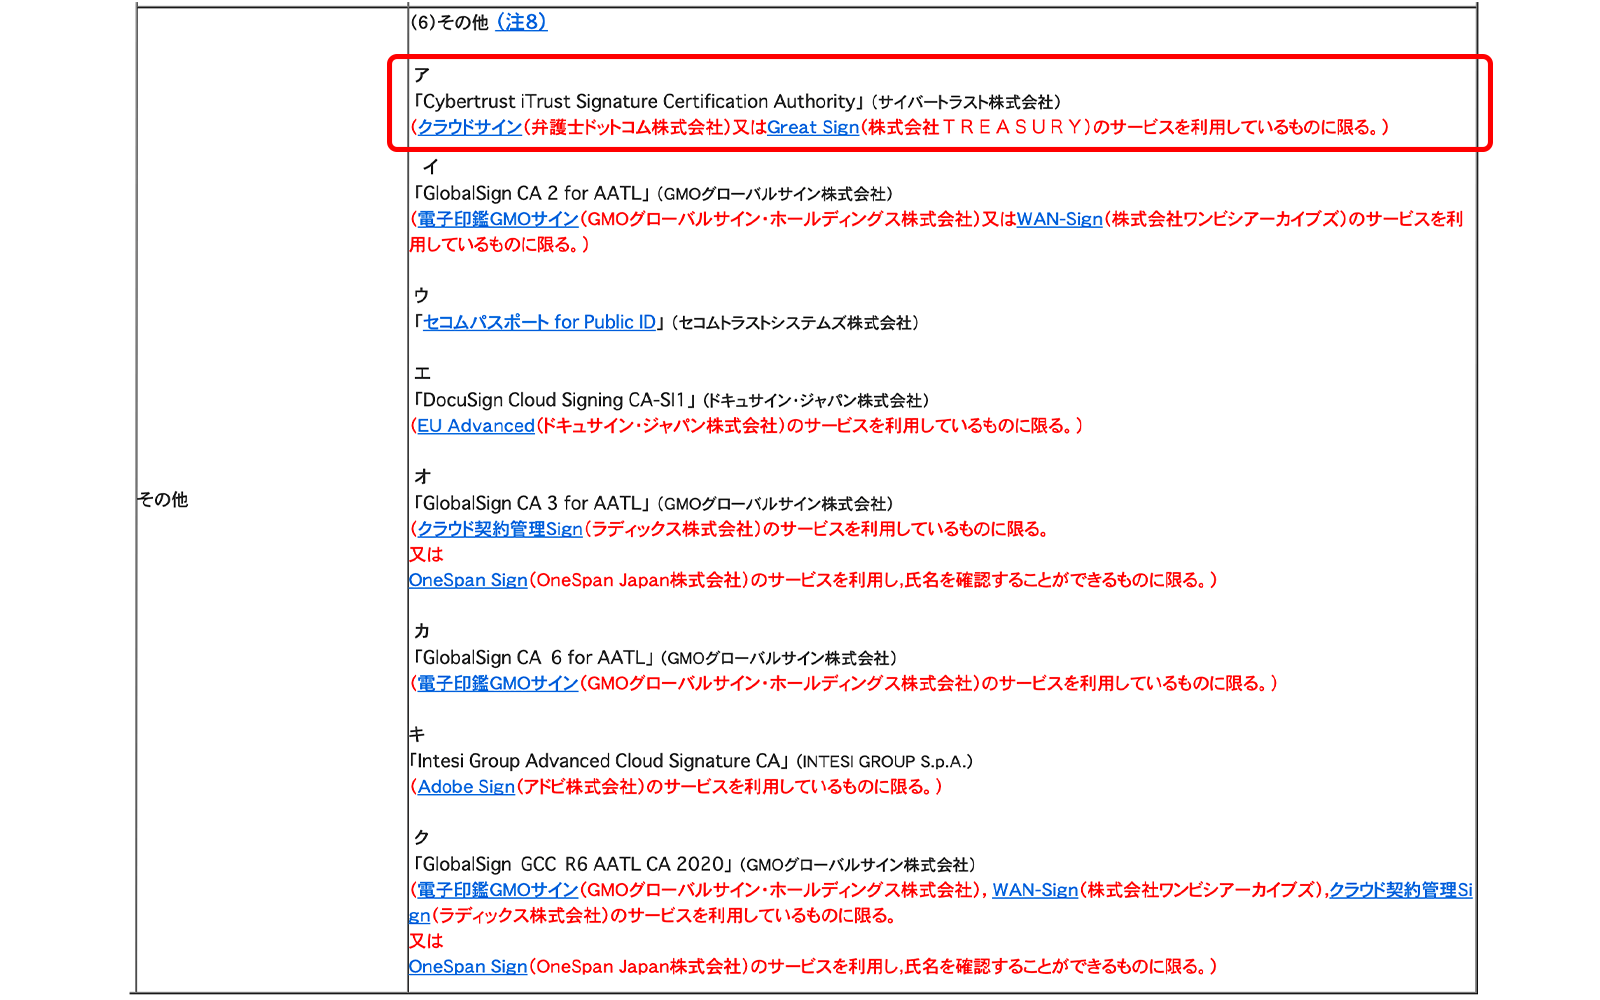 商業登記規則の改正でクラウドサインの利用範囲が拡大 http://www.moj.go.jp/MINJI/minji60.html 2021年2月16日最終アクセス